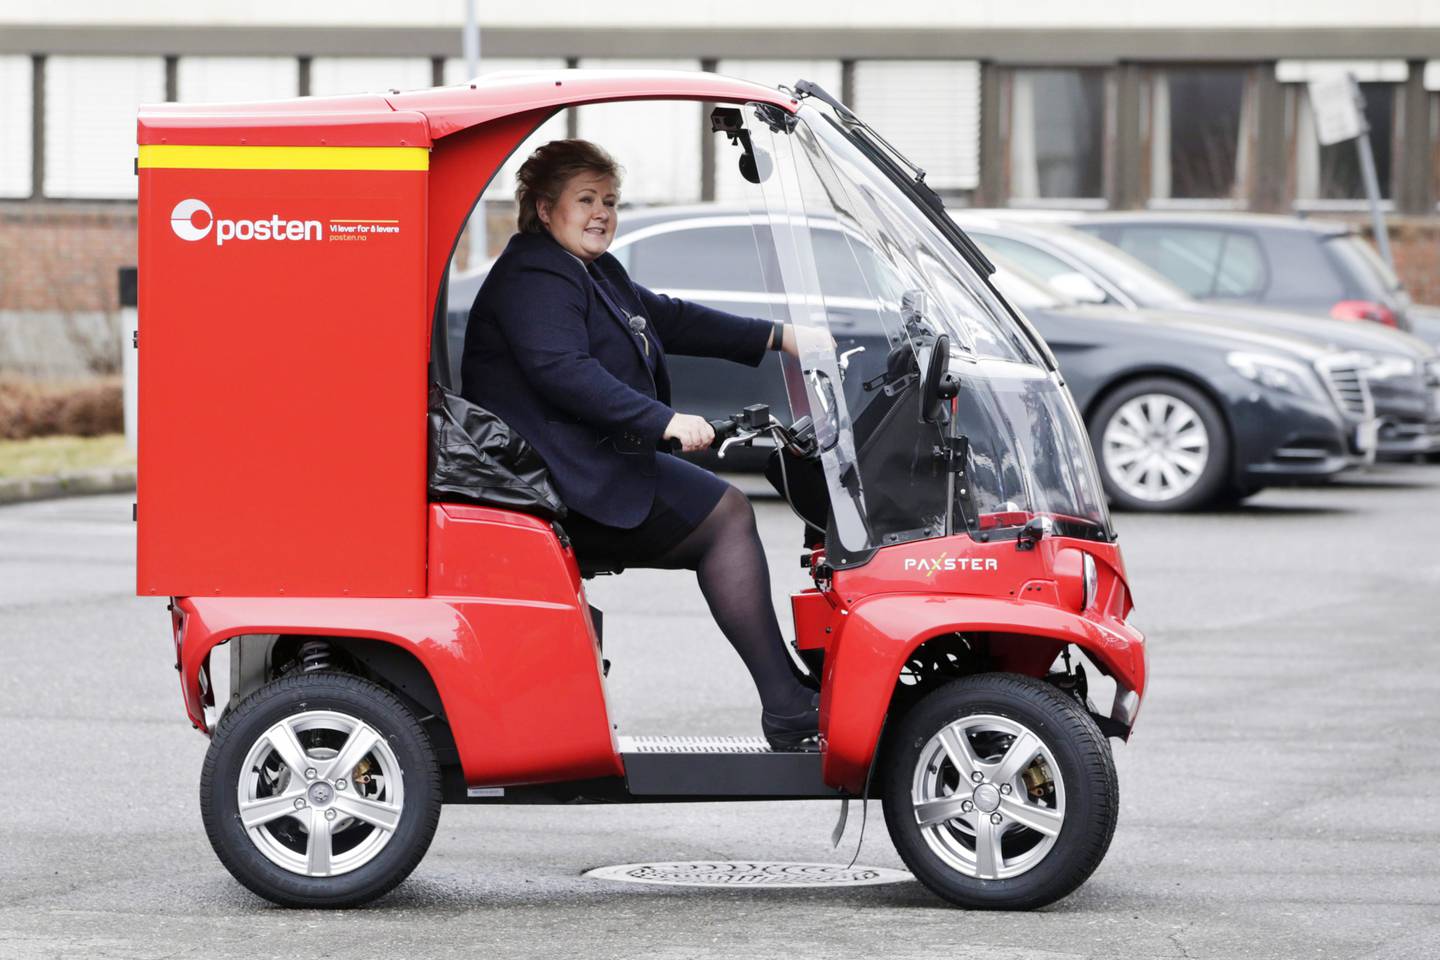 Tidligere statsminister Erna Solberg (H) prøvekjører den norskproduserte Postmann Pat-elbilen, Paxster, som i dag benyttes over hele Norge og eksporteres til flere land. Foto: Håkon Mosvold Larsen / NTB